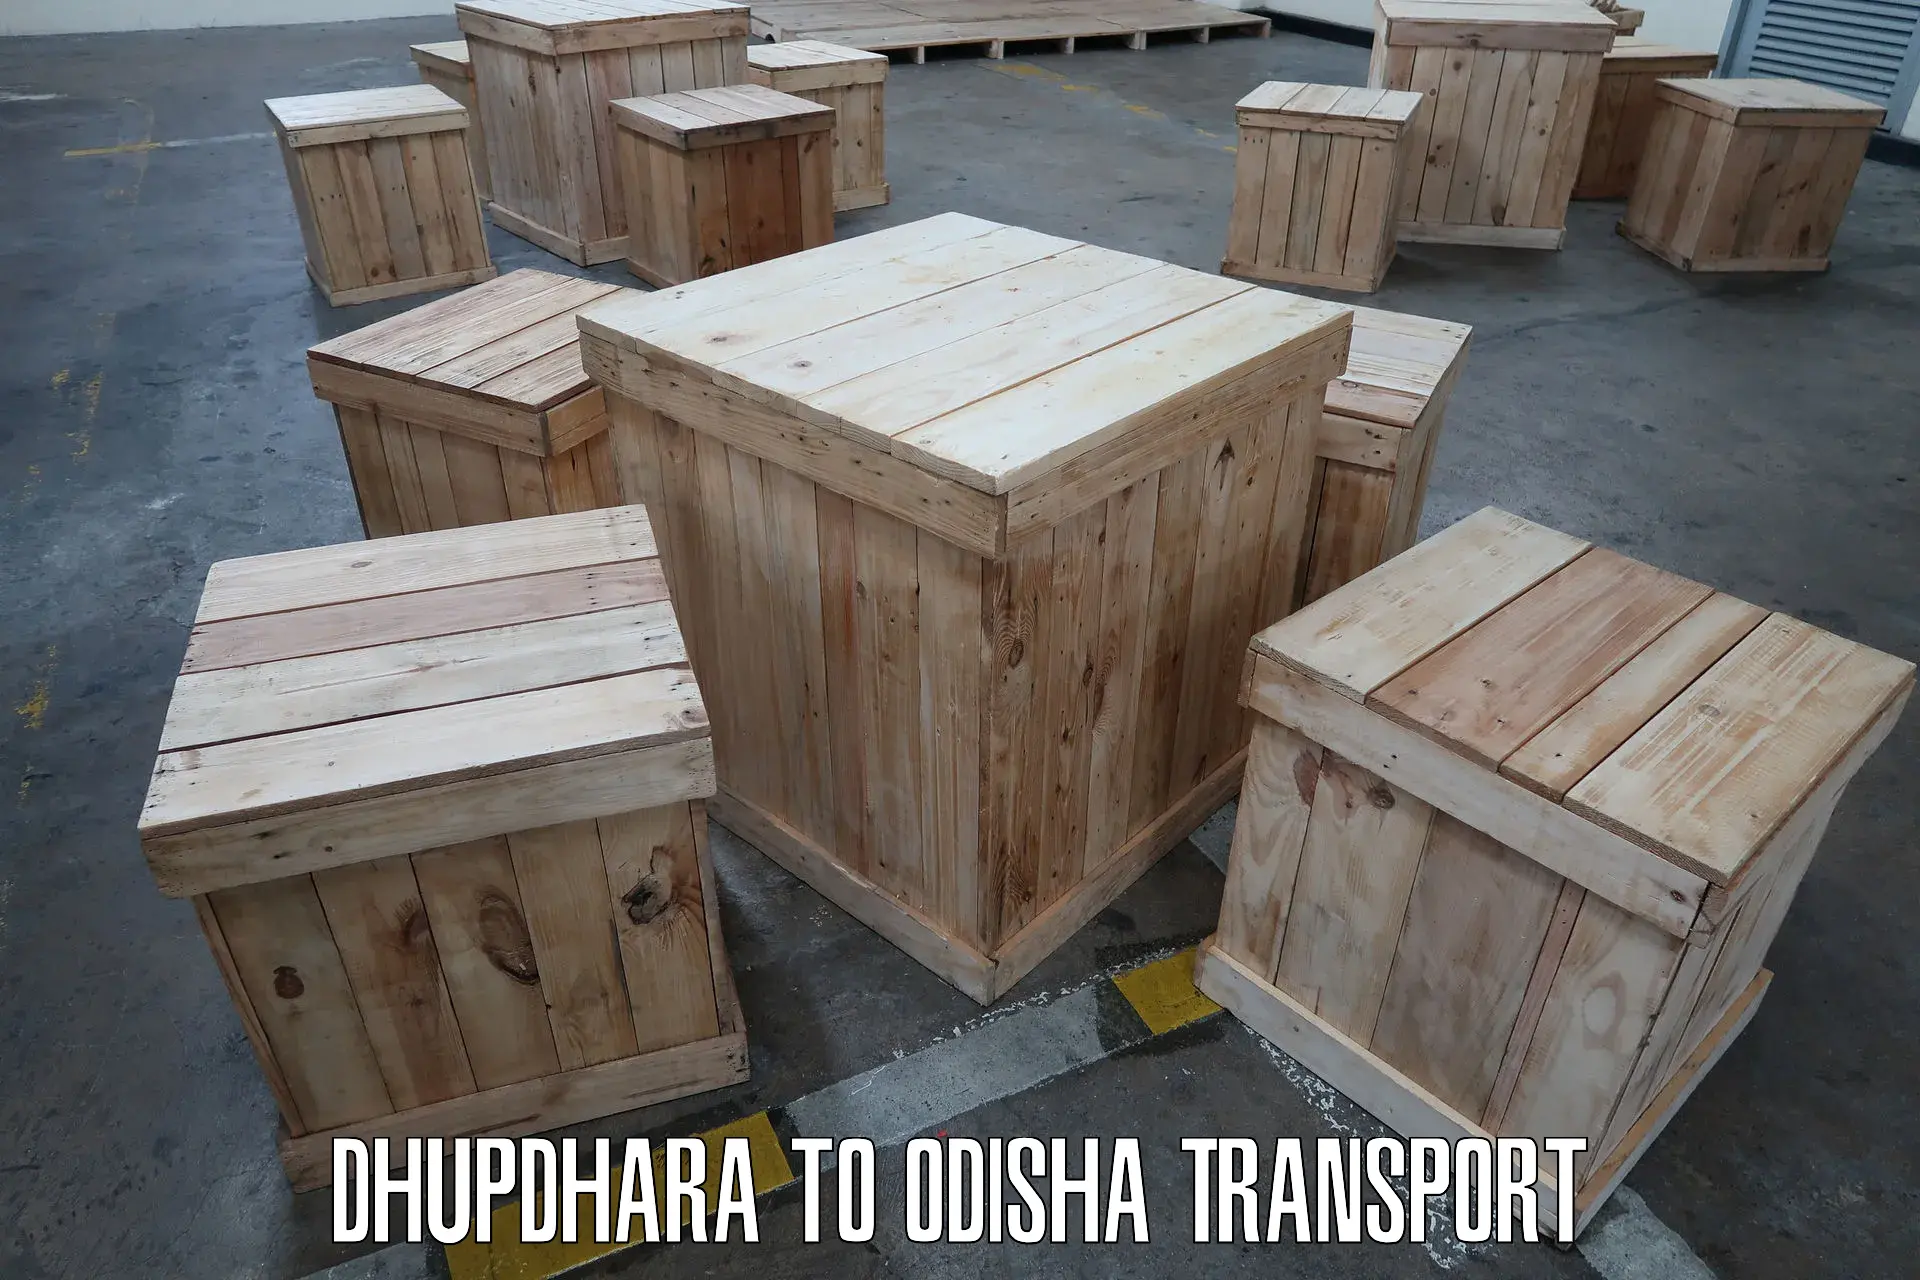 Daily parcel service transport Dhupdhara to Badagada